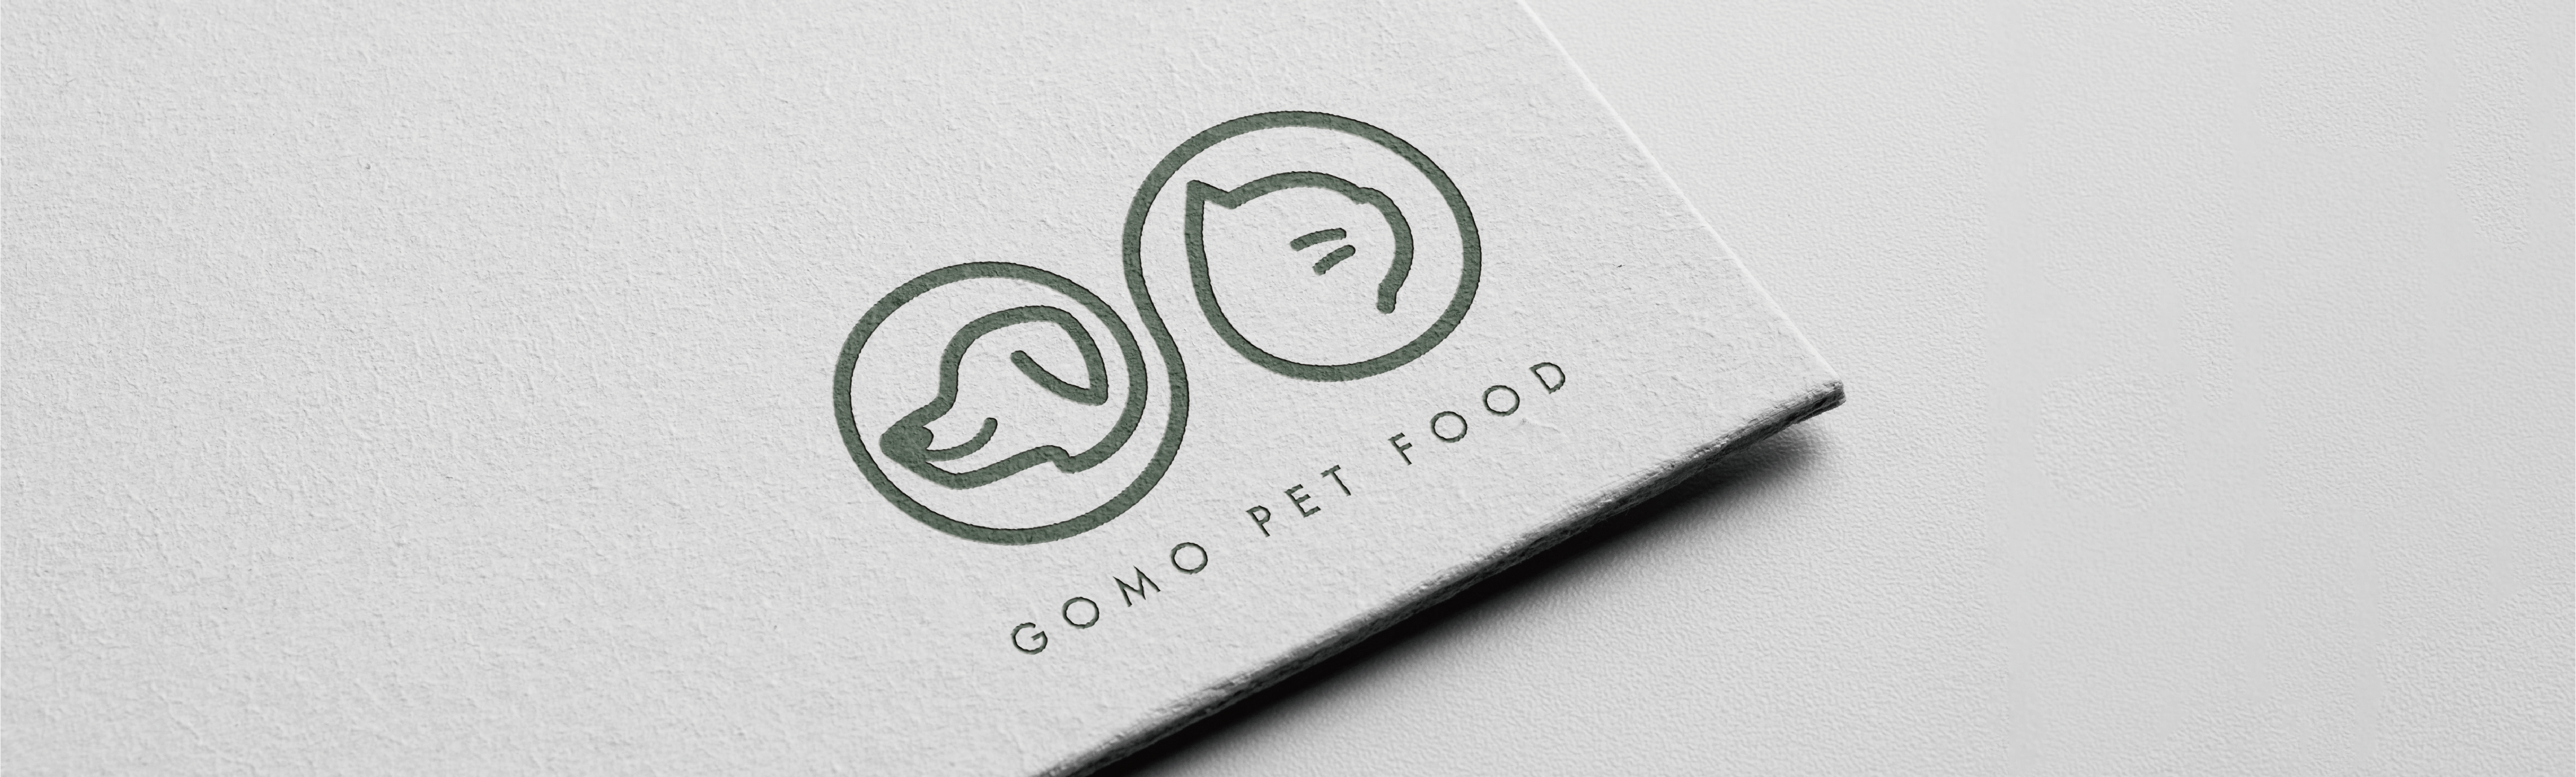 GOMO品牌精神是連結寵物與人最深厚的感情，使人與寵物之間的情感無限延伸，讓獨一無二的毛孩展現出無限的可能。